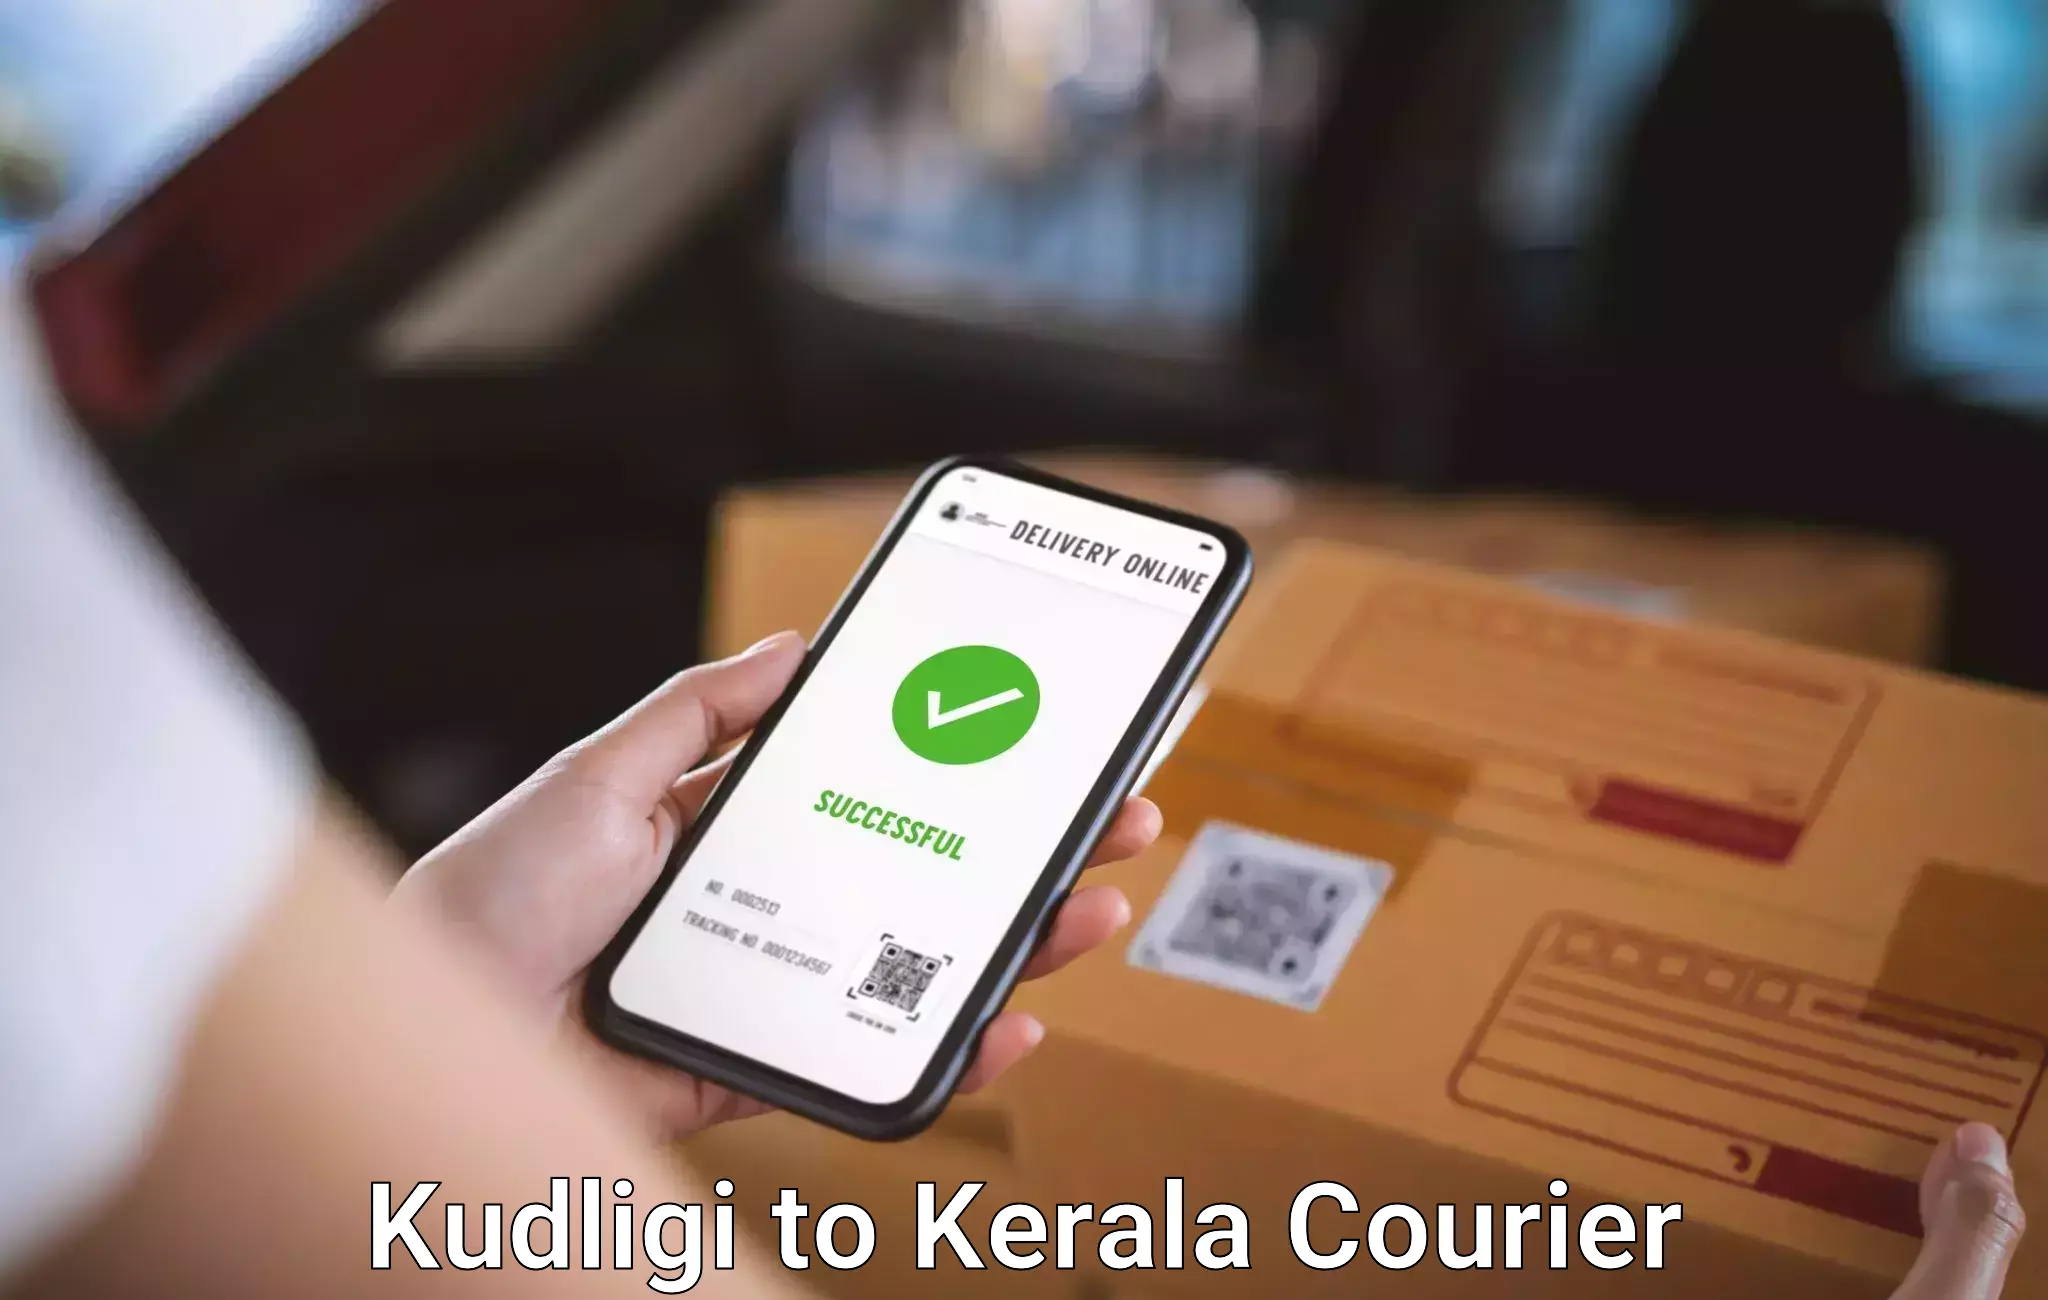 Personalized luggage shipping Kudligi to Kerala